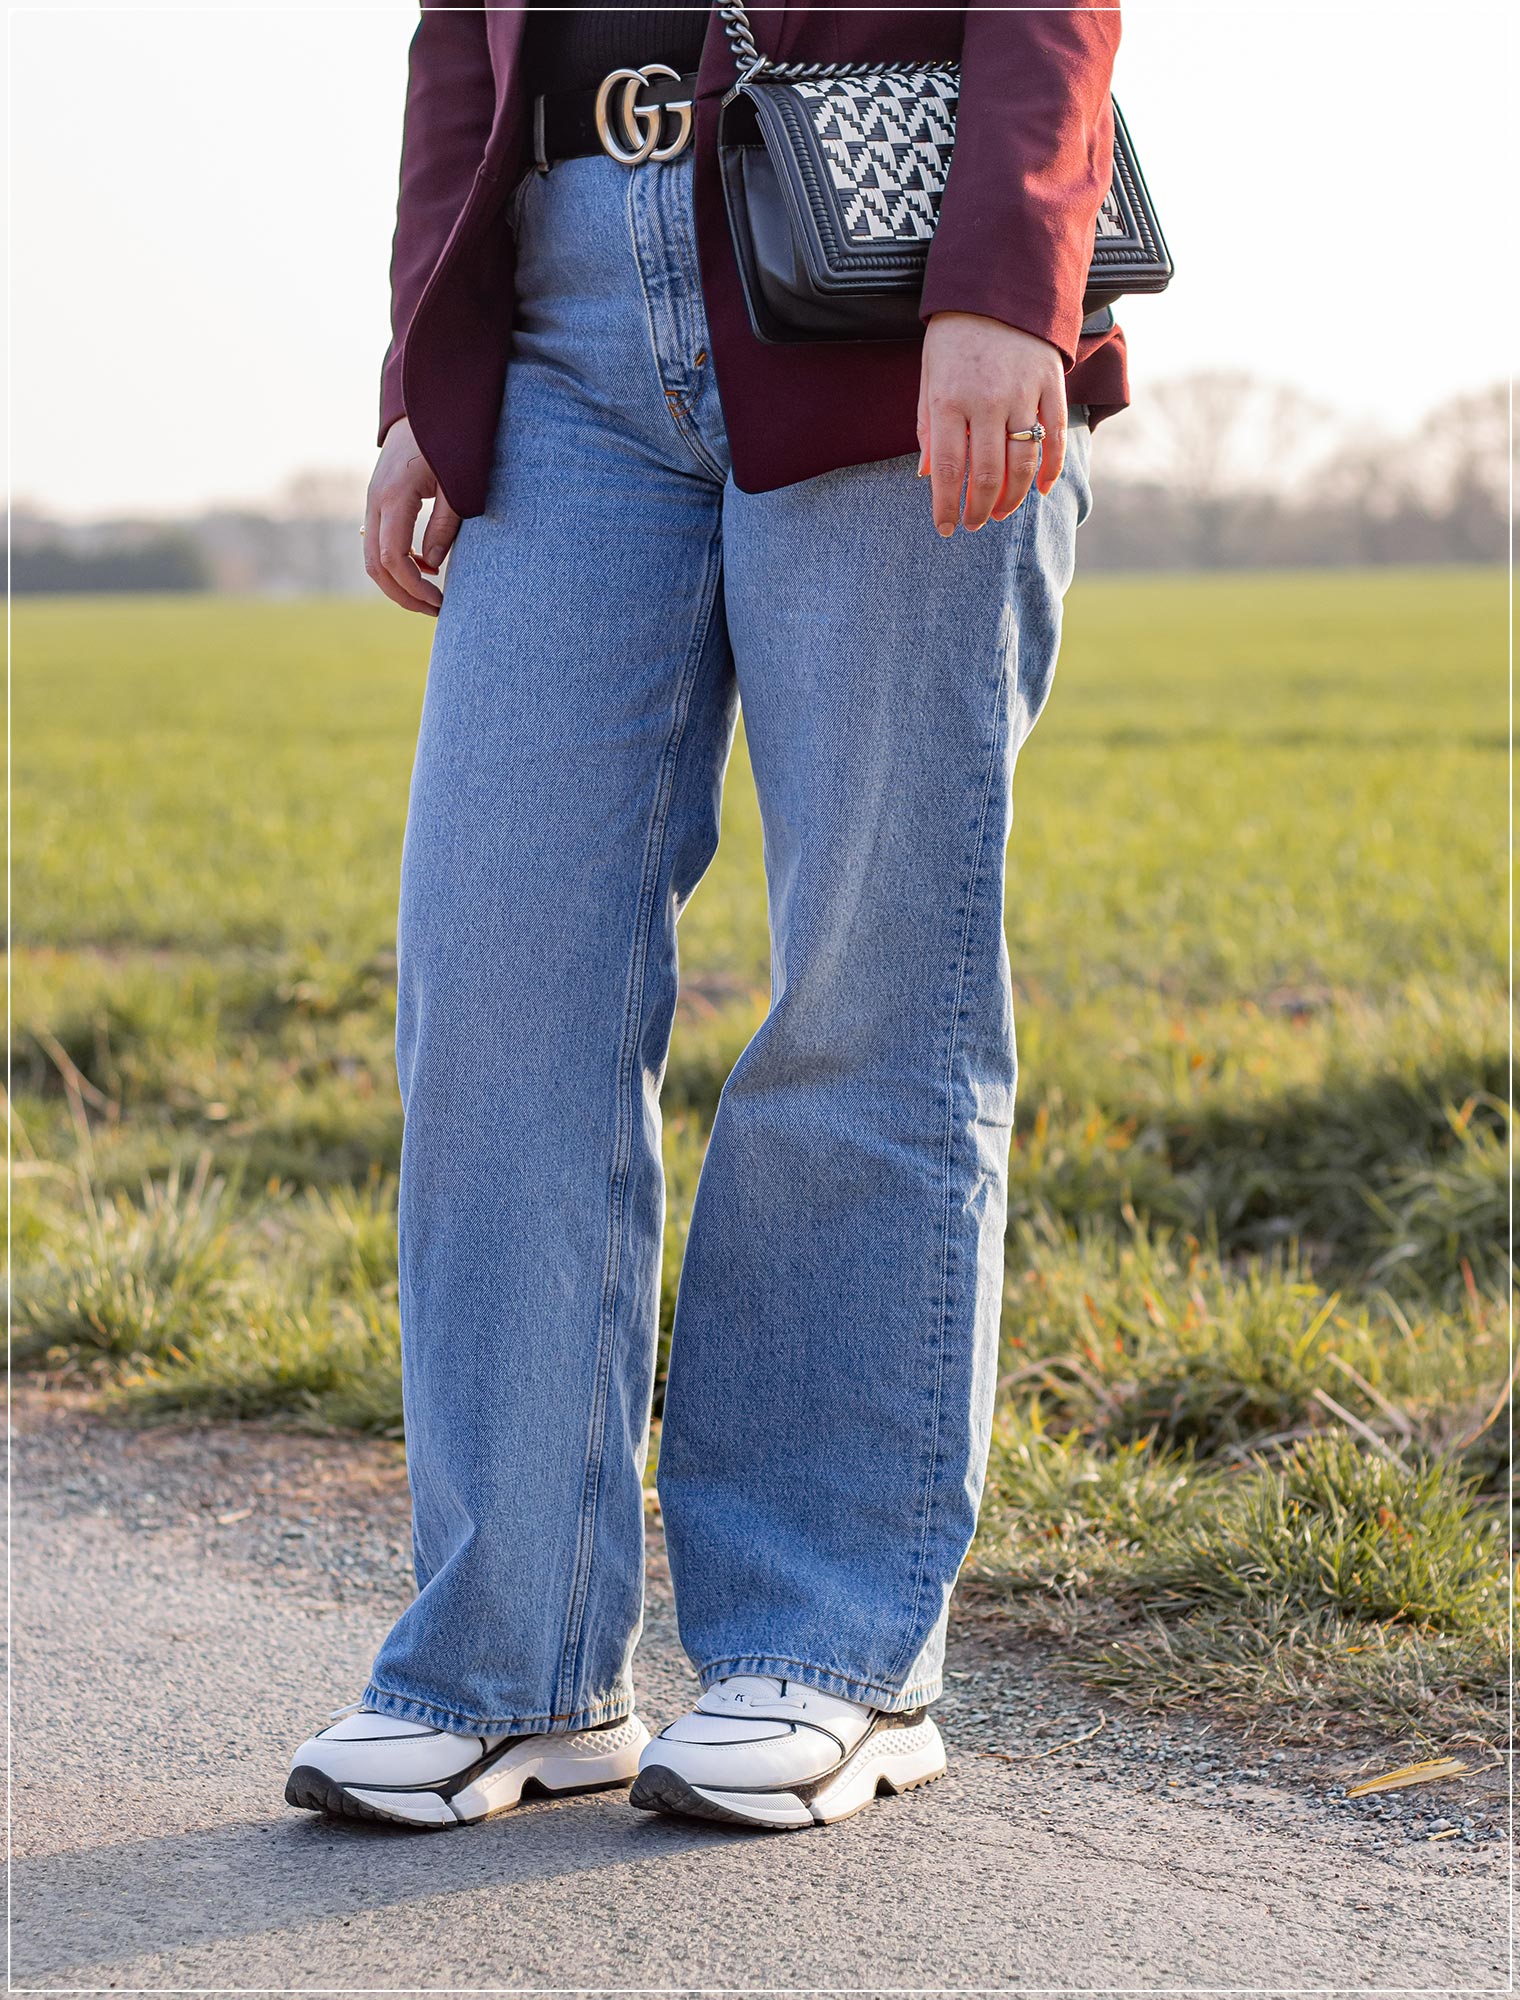 Wide Leg Jeans als Key Piece in einem sportlichen Look